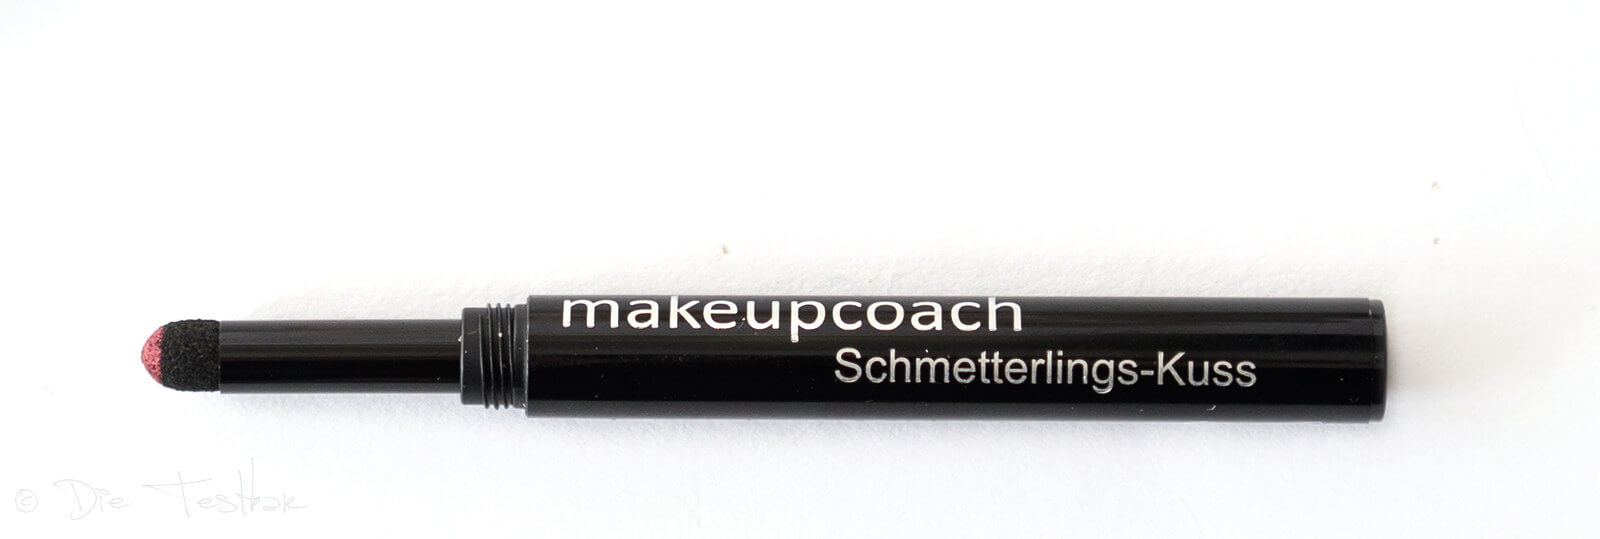 Für ein wunderschönes Augen- und Lippen-Make-up - Hochwertige Produkte von makeupcoach 34